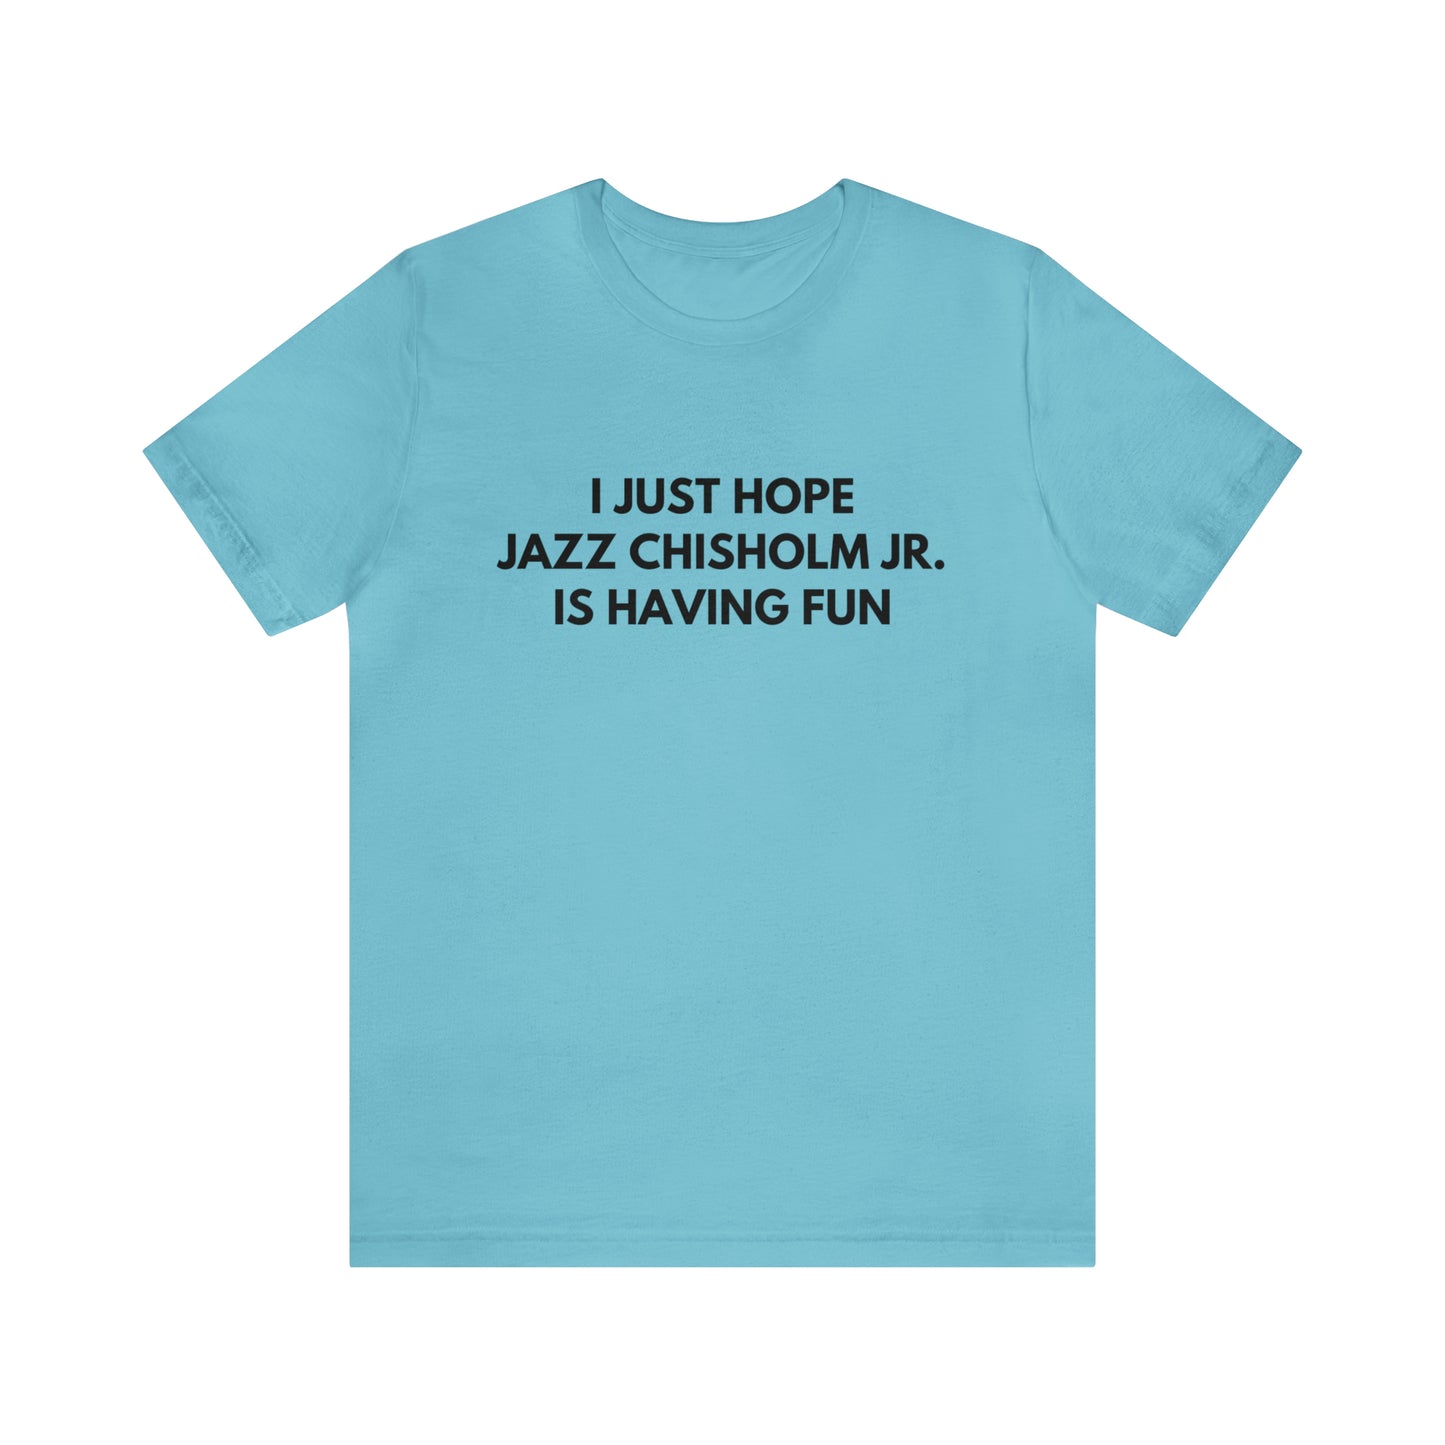 Jazz Chisholm Jr. Having Fun - Unisex T-shirt